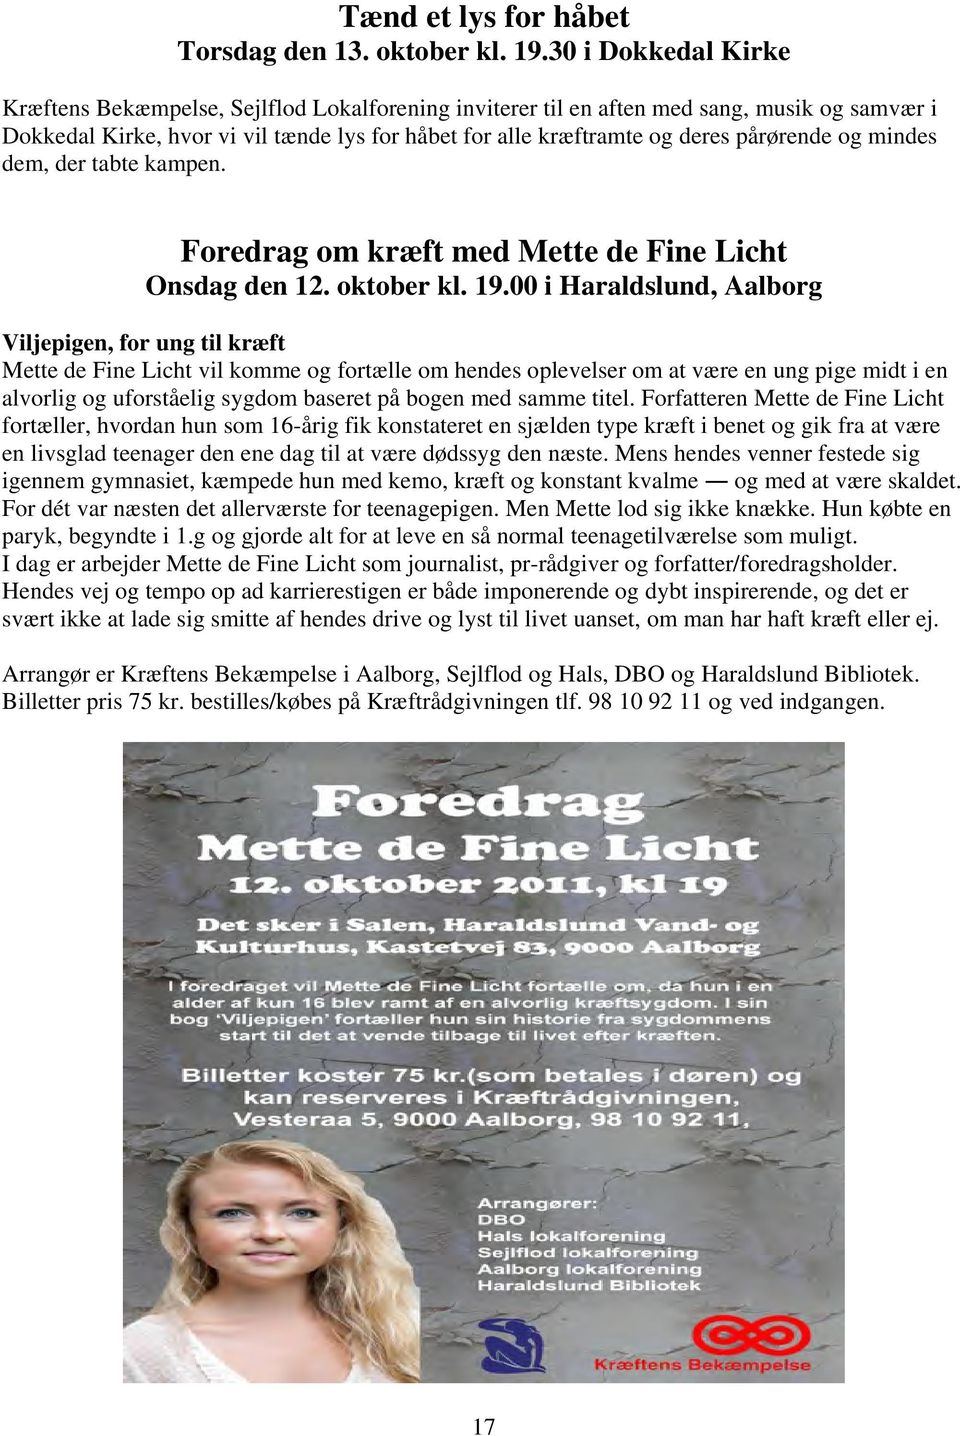 pårørende og mindes dem, der tabte kampen. Foredrag om kræft med Mette de Fine Licht Onsdag den 12. oktober kl. 19.